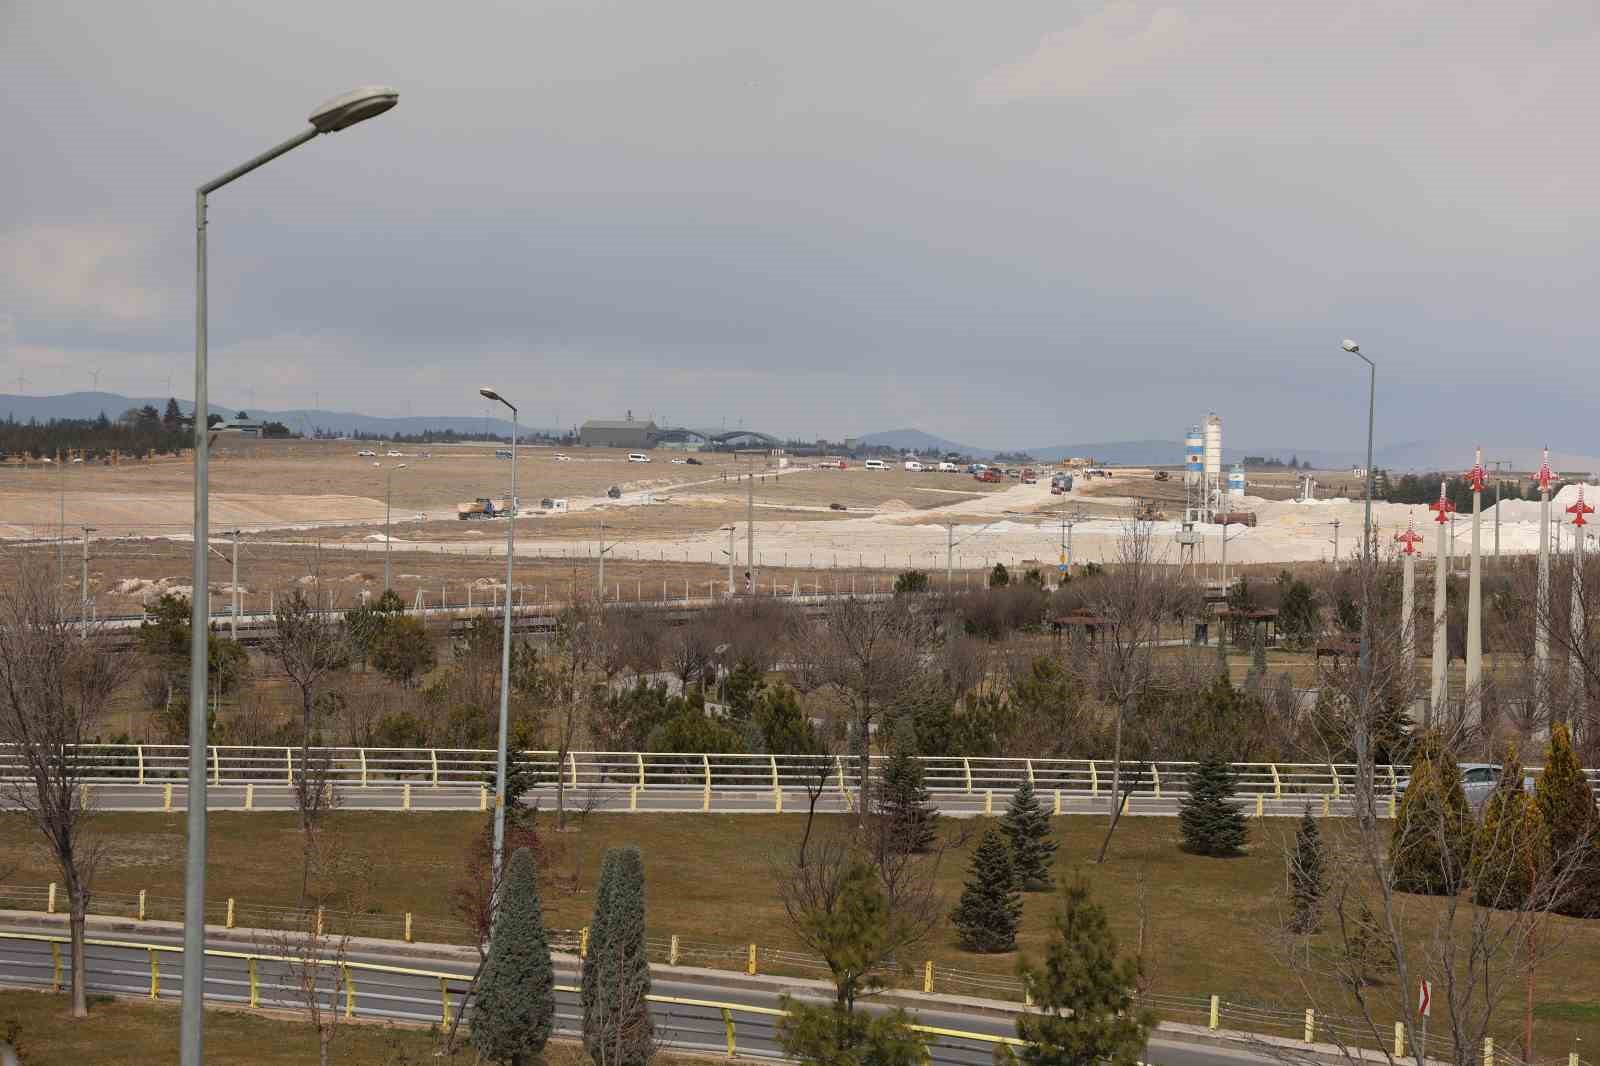 Konya’da son 15 yılda askeri uçak kazalarında 7’si pilot 8 askeri personel şehit oldu
